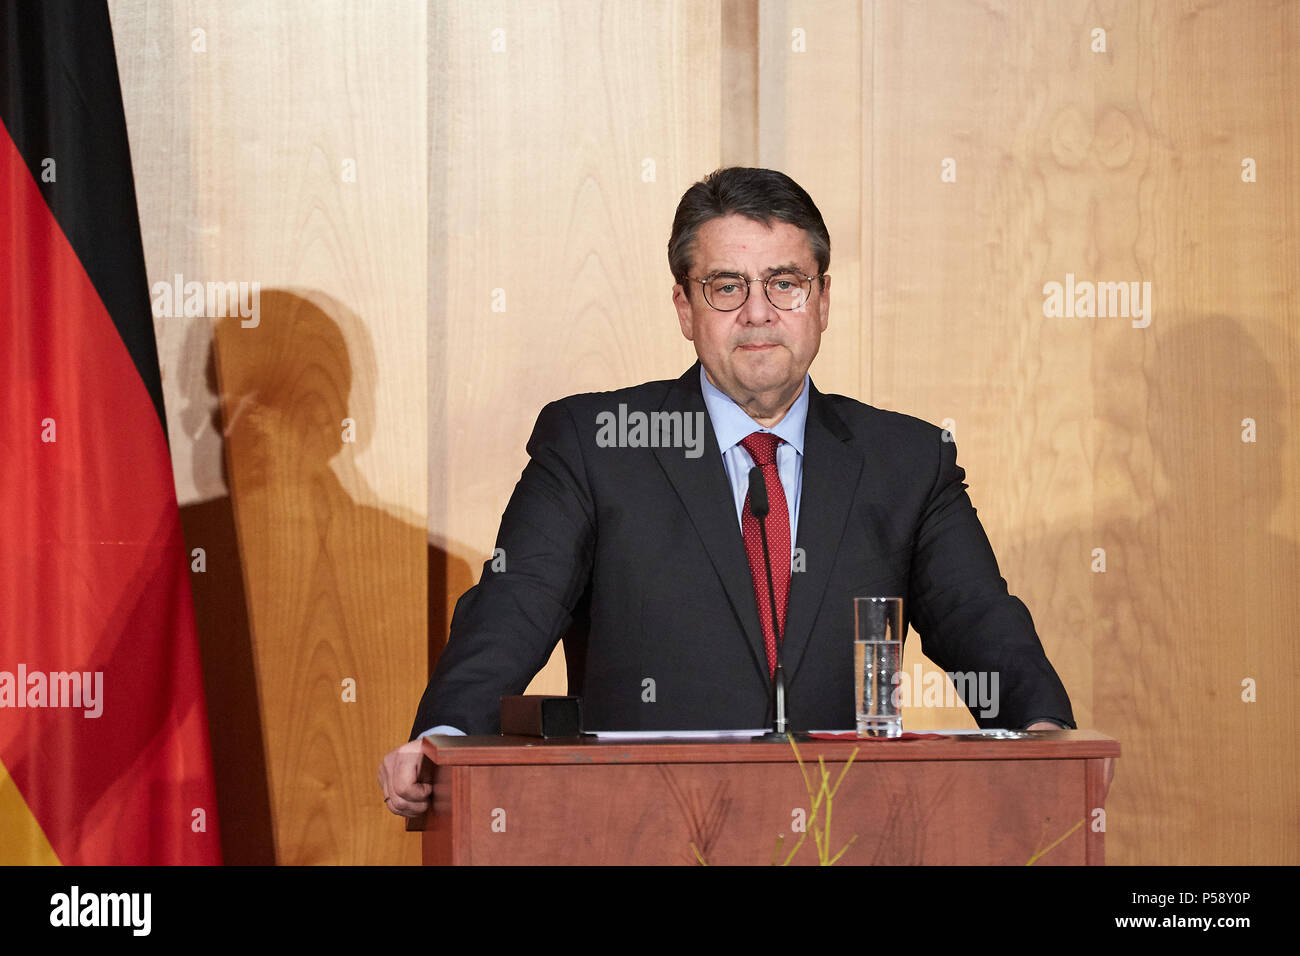 Berlín, Alemania - El canciller saliente Sigmar Gabriel tiene su discurso de despedida en el cambio ministerial en el Salón Mundial de la Cancillería. Foto de stock